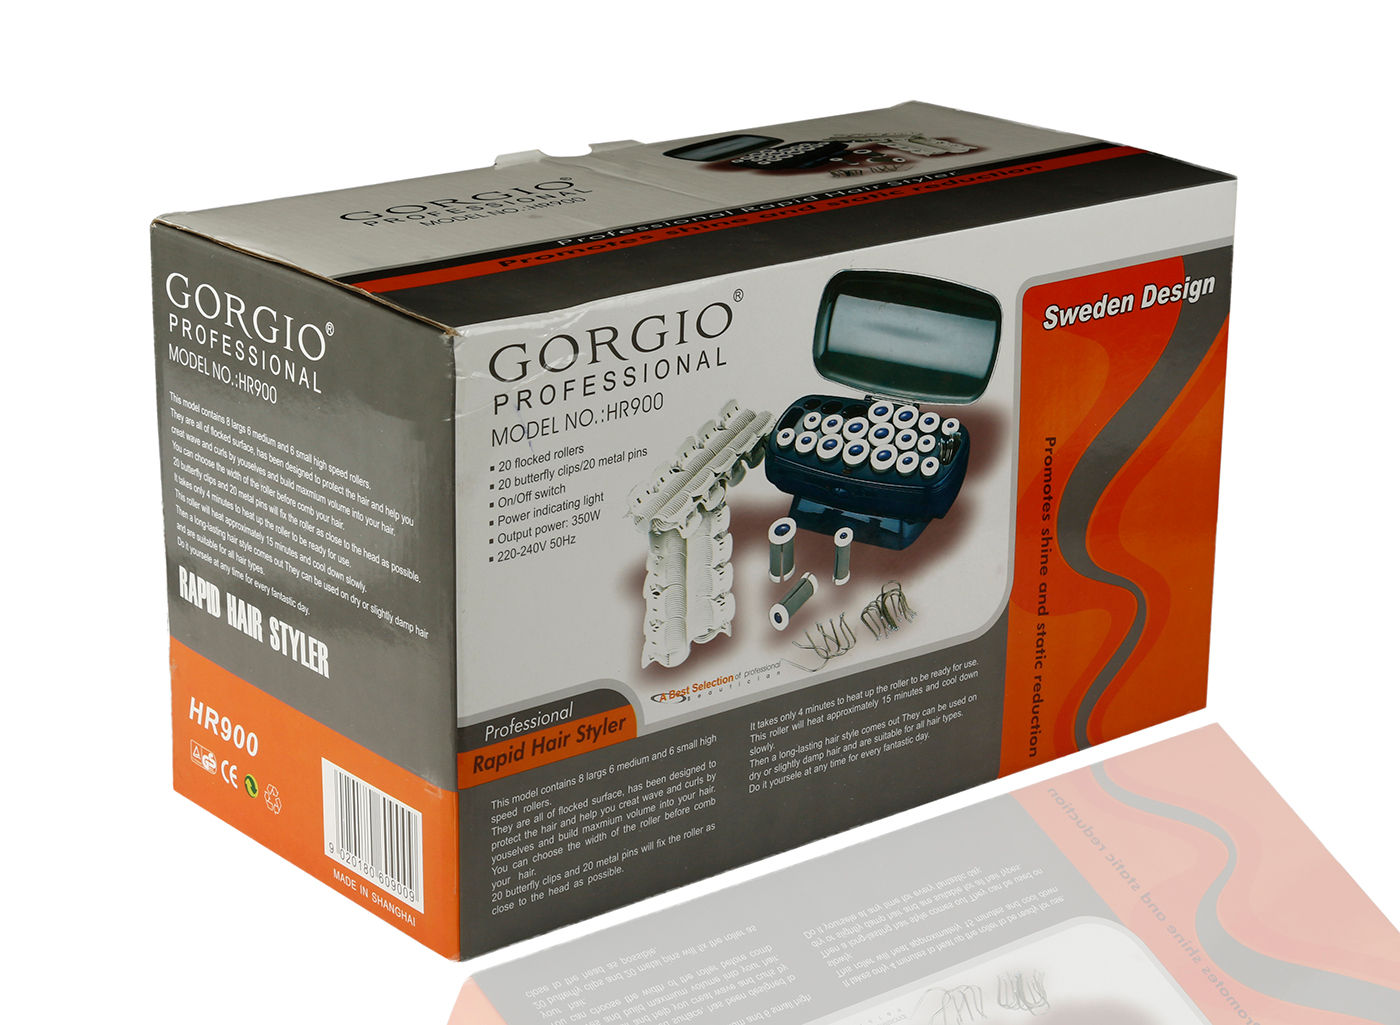 Buy Gorgio Professional Hot Roller Hr900 - Purplle